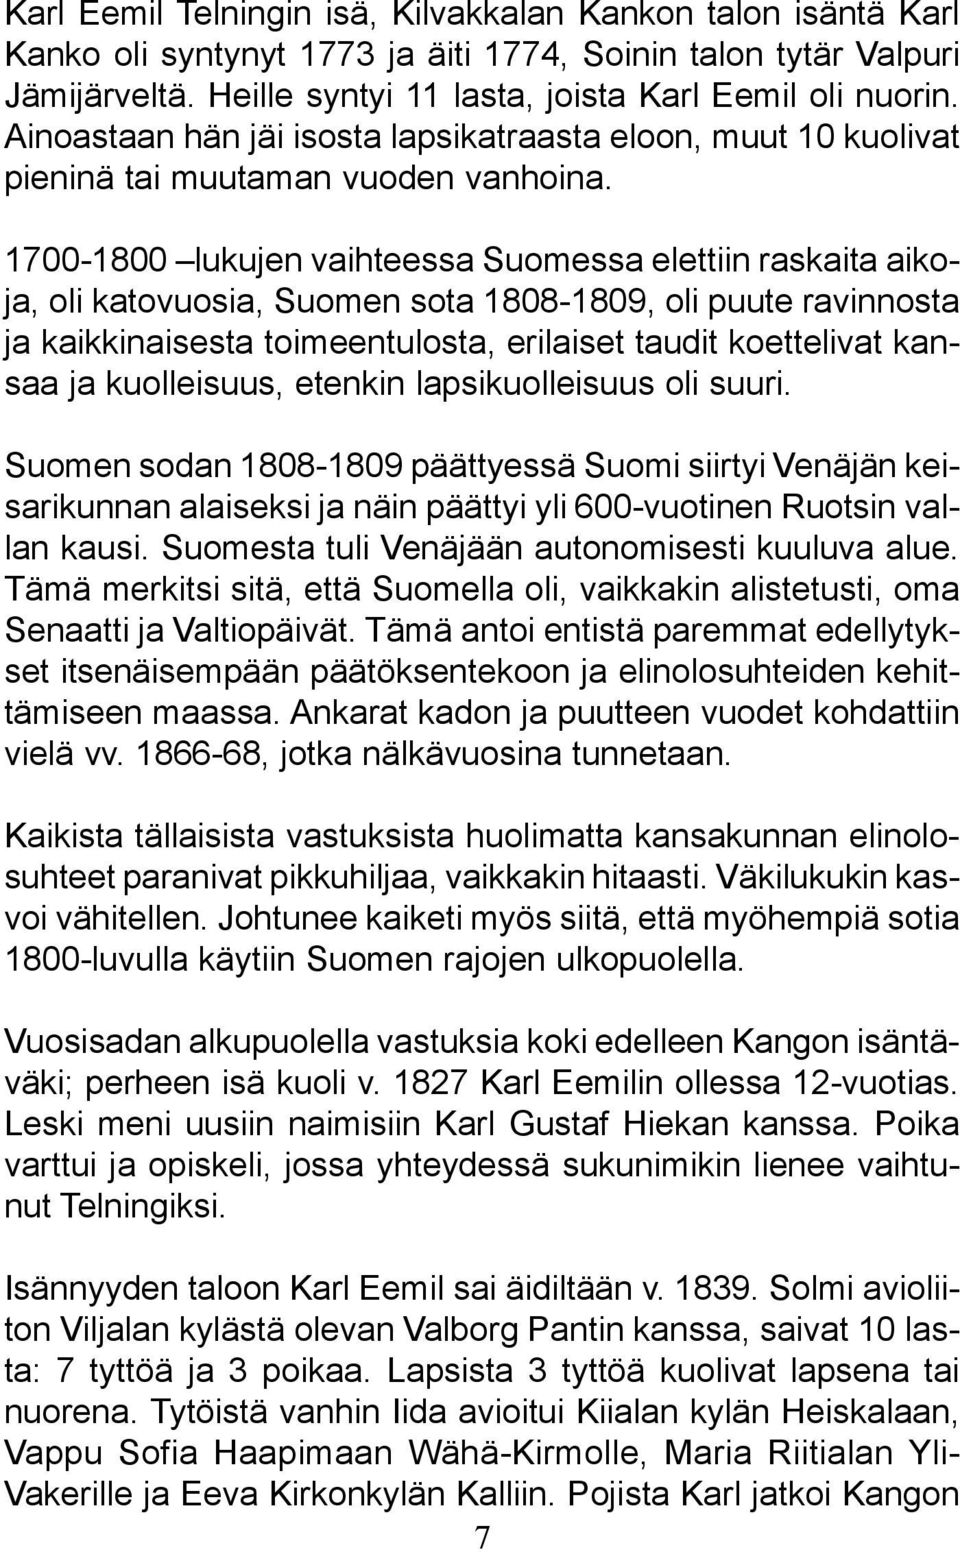 1700-1800 lukujen vaihteessa Suomessa elettiin raskaita aikoja, oli katovuosia, Suomen sota 1808-1809, oli puute ravinnosta ja kaikkinaisesta toimeentulosta, erilaiset taudit koettelivat kansaa ja